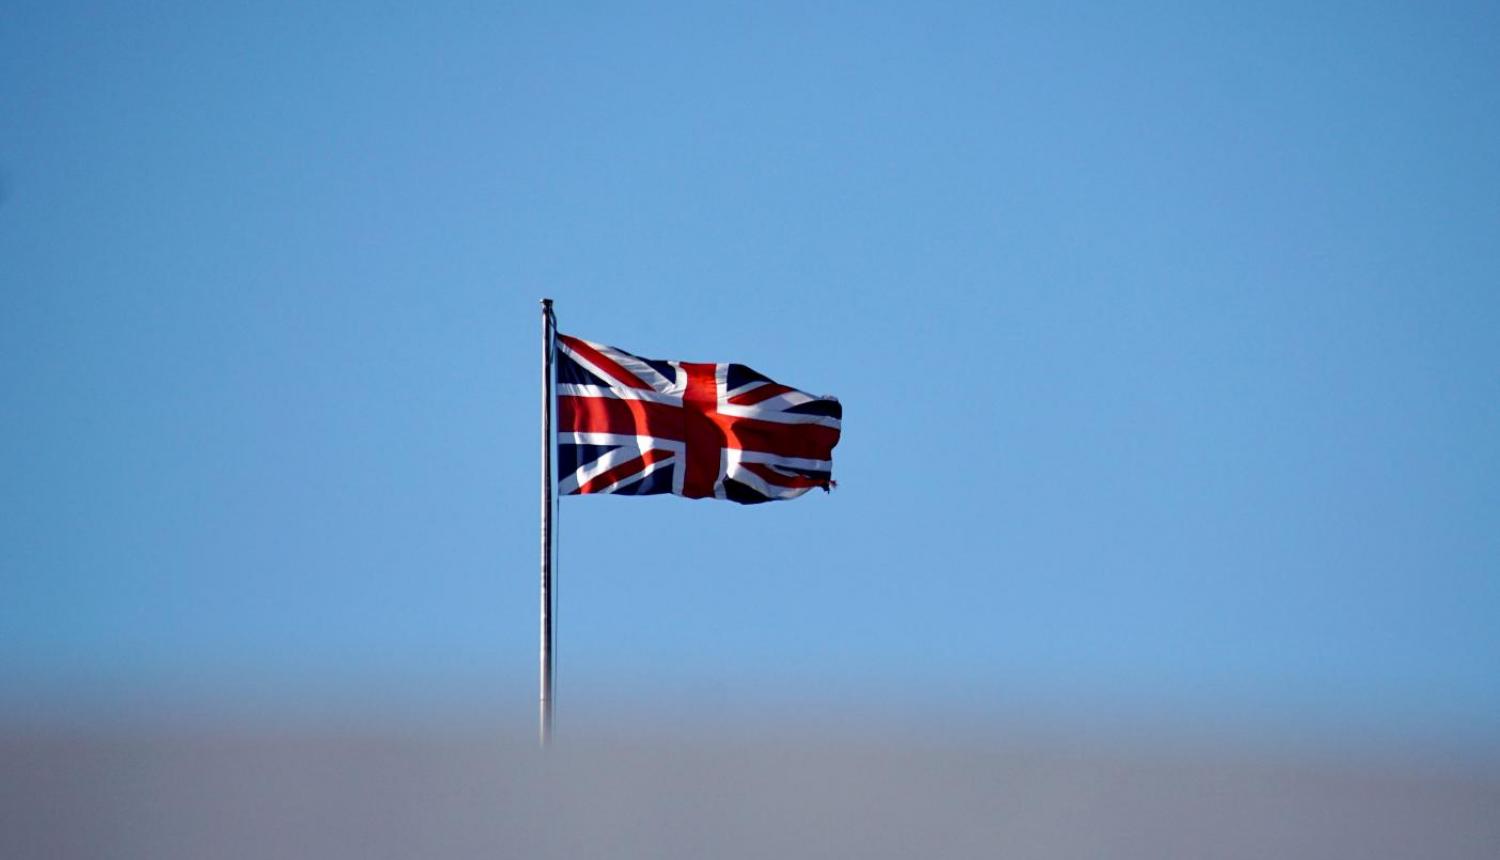 Lielbritānijas karogs uz gaišzilu debesu fona